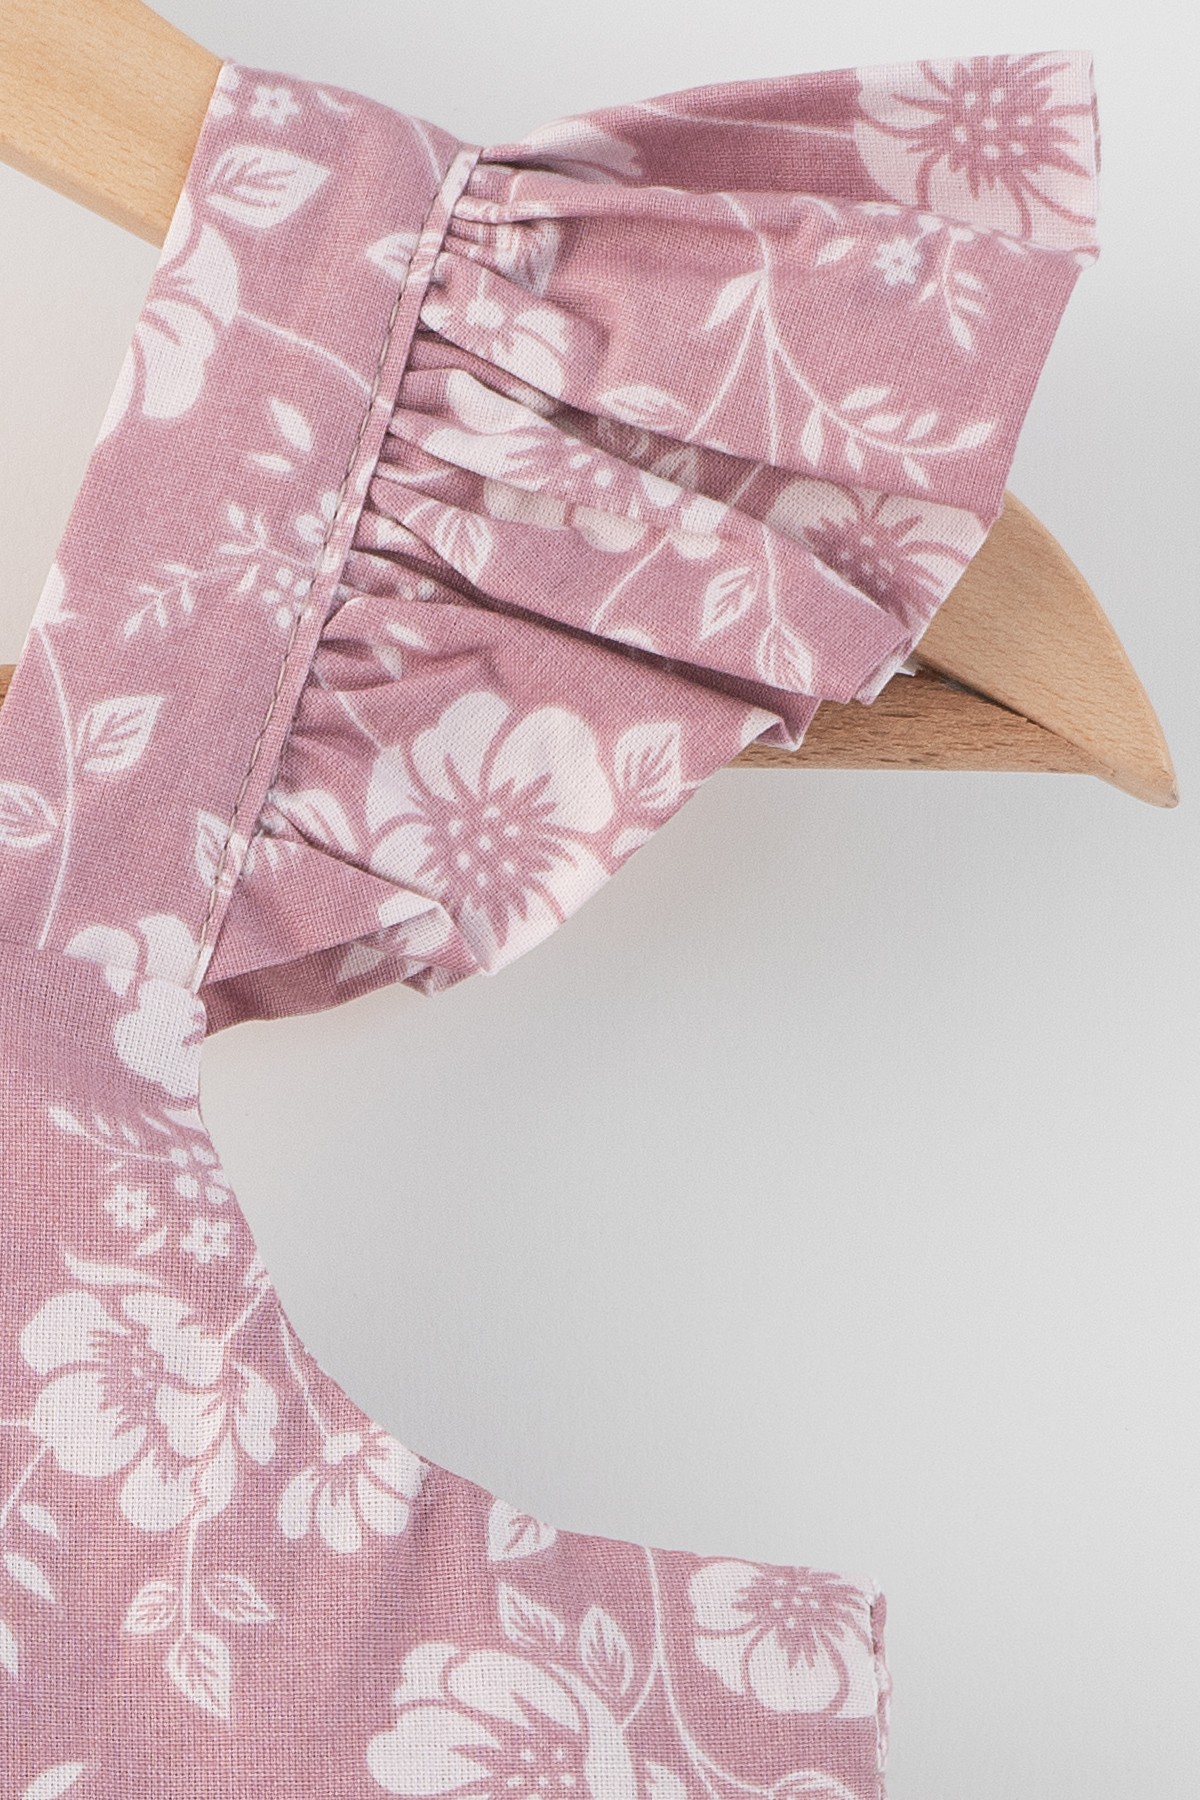 Naomi Çiçek Desenli Omuzları Fırfırlı Sırtı Fiyonk Bağlamalı Pamuklu Elbise - Funda Pembesi